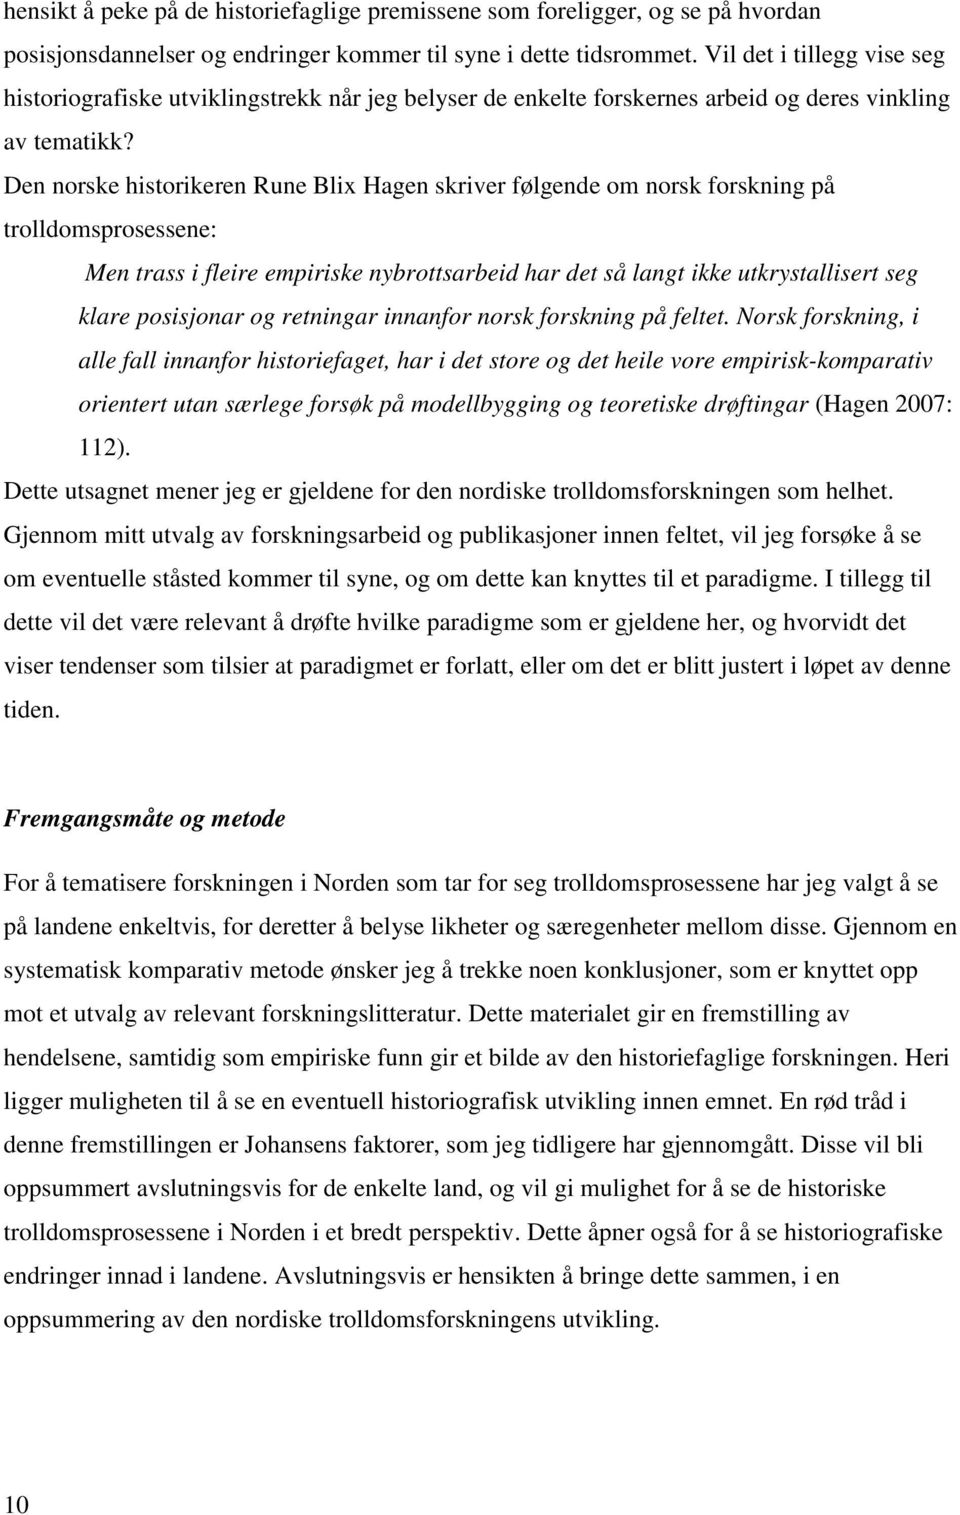 Den norske historikeren Rune Blix Hagen skriver følgende om norsk forskning på trolldomsprosessene: Men trass i fleire empiriske nybrottsarbeid har det så langt ikke utkrystallisert seg klare